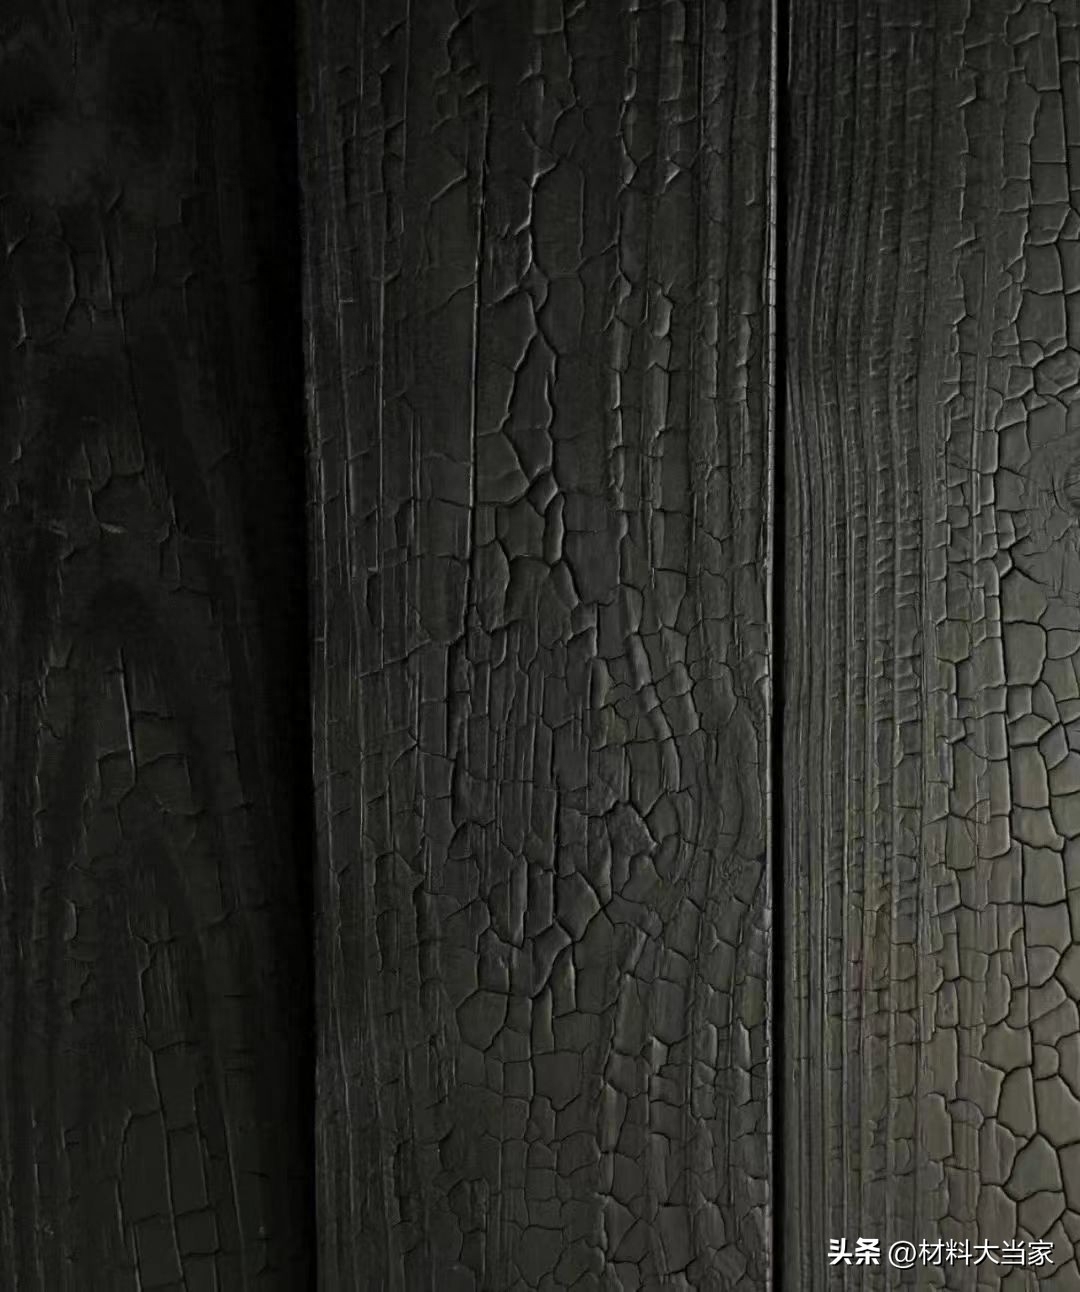 碳化木经过燃烧碳化过的碳烧木，略微烧焦的表面，更具艺术性和实用性，使整个空间更加沉稳与神秘炭化木又称炭烧木，是一种热处理木材炭化木的表面带有木材自然的纹理表面炭化